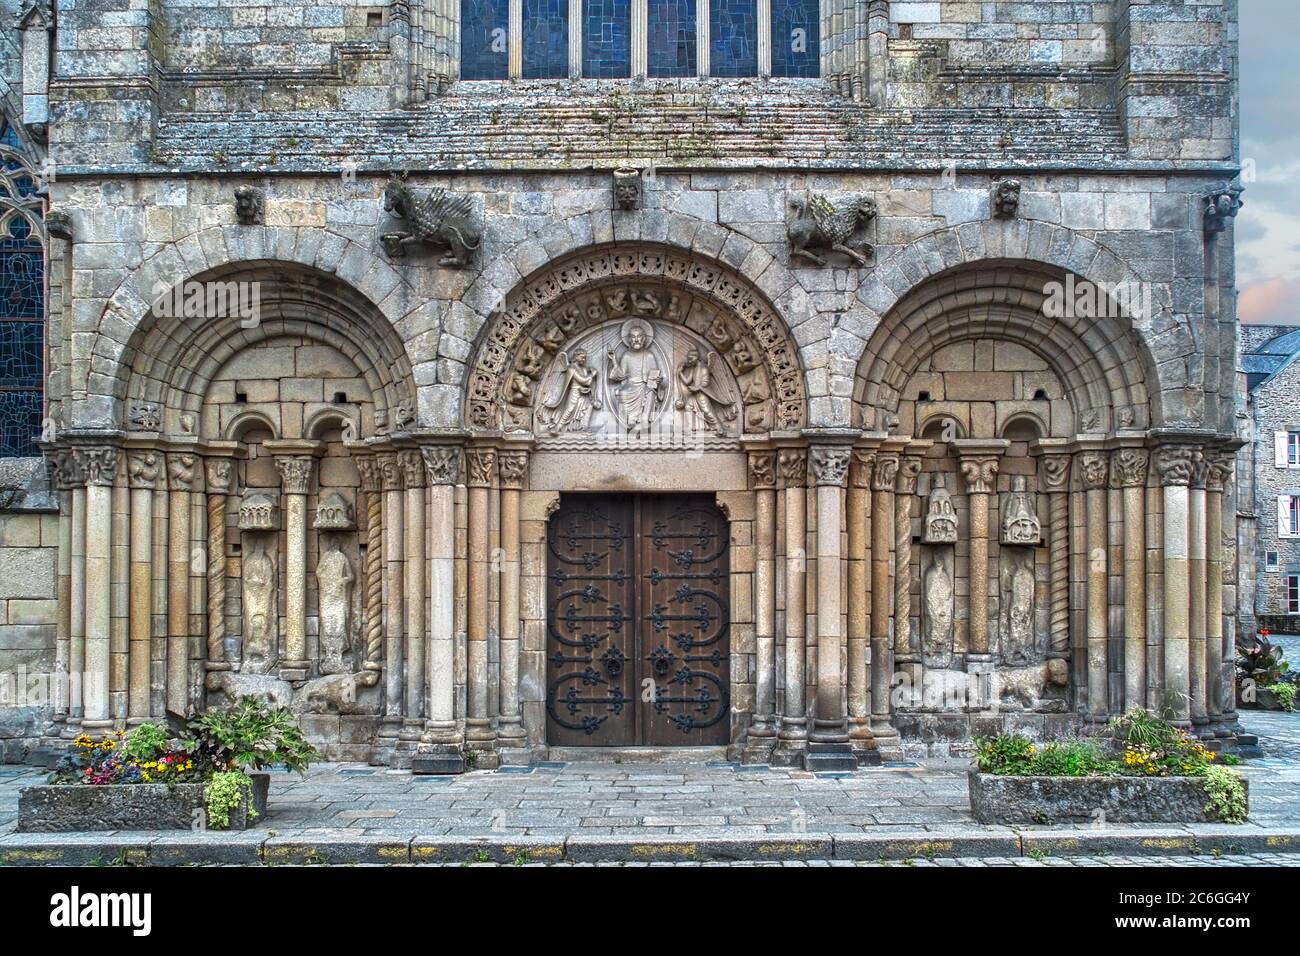 Saint Sauveur, Dinan, Bretagne, Frankreich. Der romanische Eingang von Saint Sauveur; diese wichtige Kirche hat eine Mischung aus Epochen und Stilen. Stockfoto